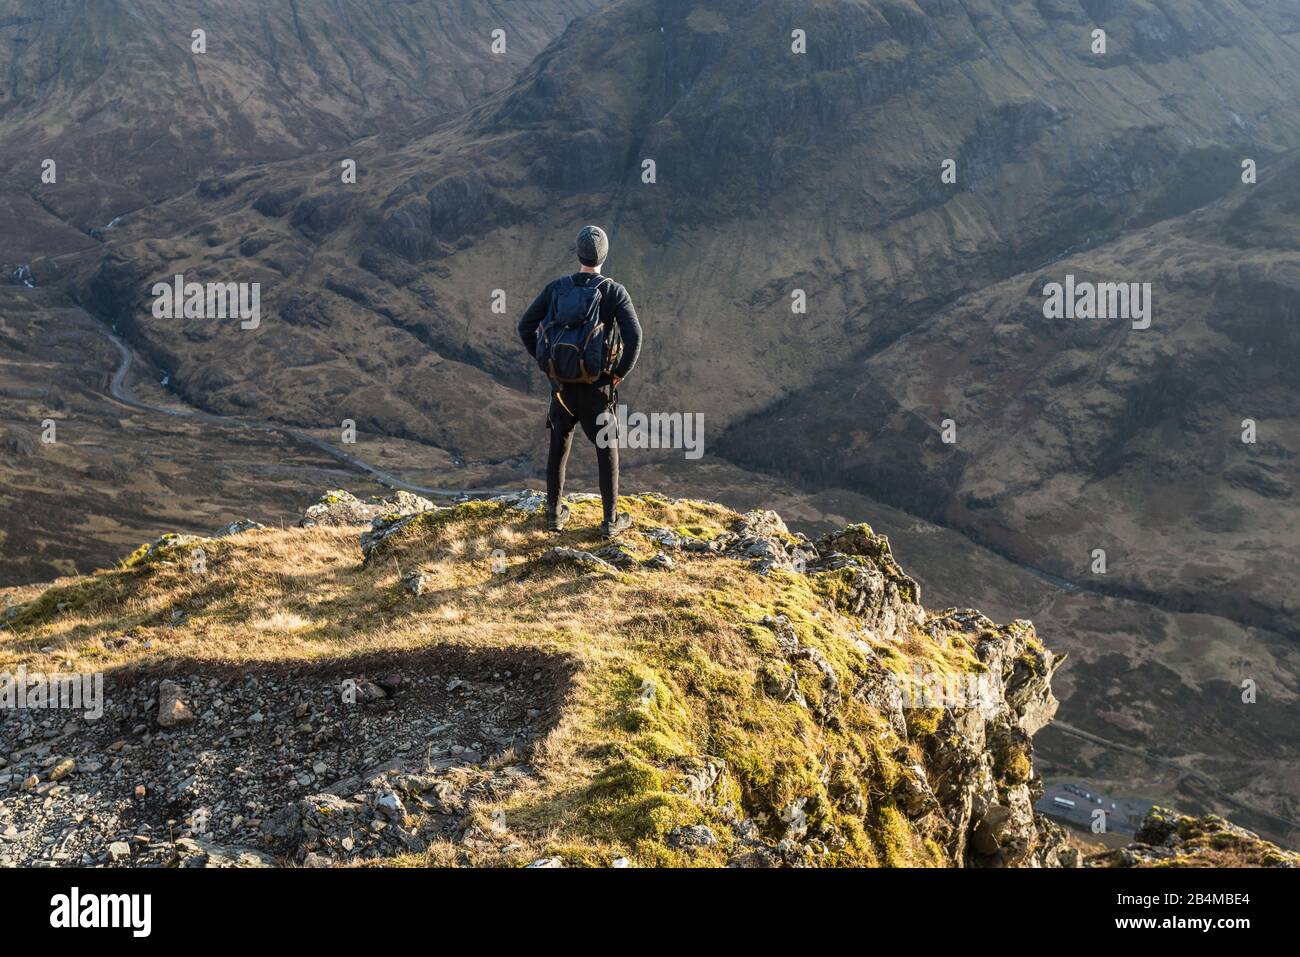 Großbritannien, Schottland, Highlands, Glencoe, Junger Mann blickt von Felsvorsprung ins Tal Richtung Three Sisters Stock Photo